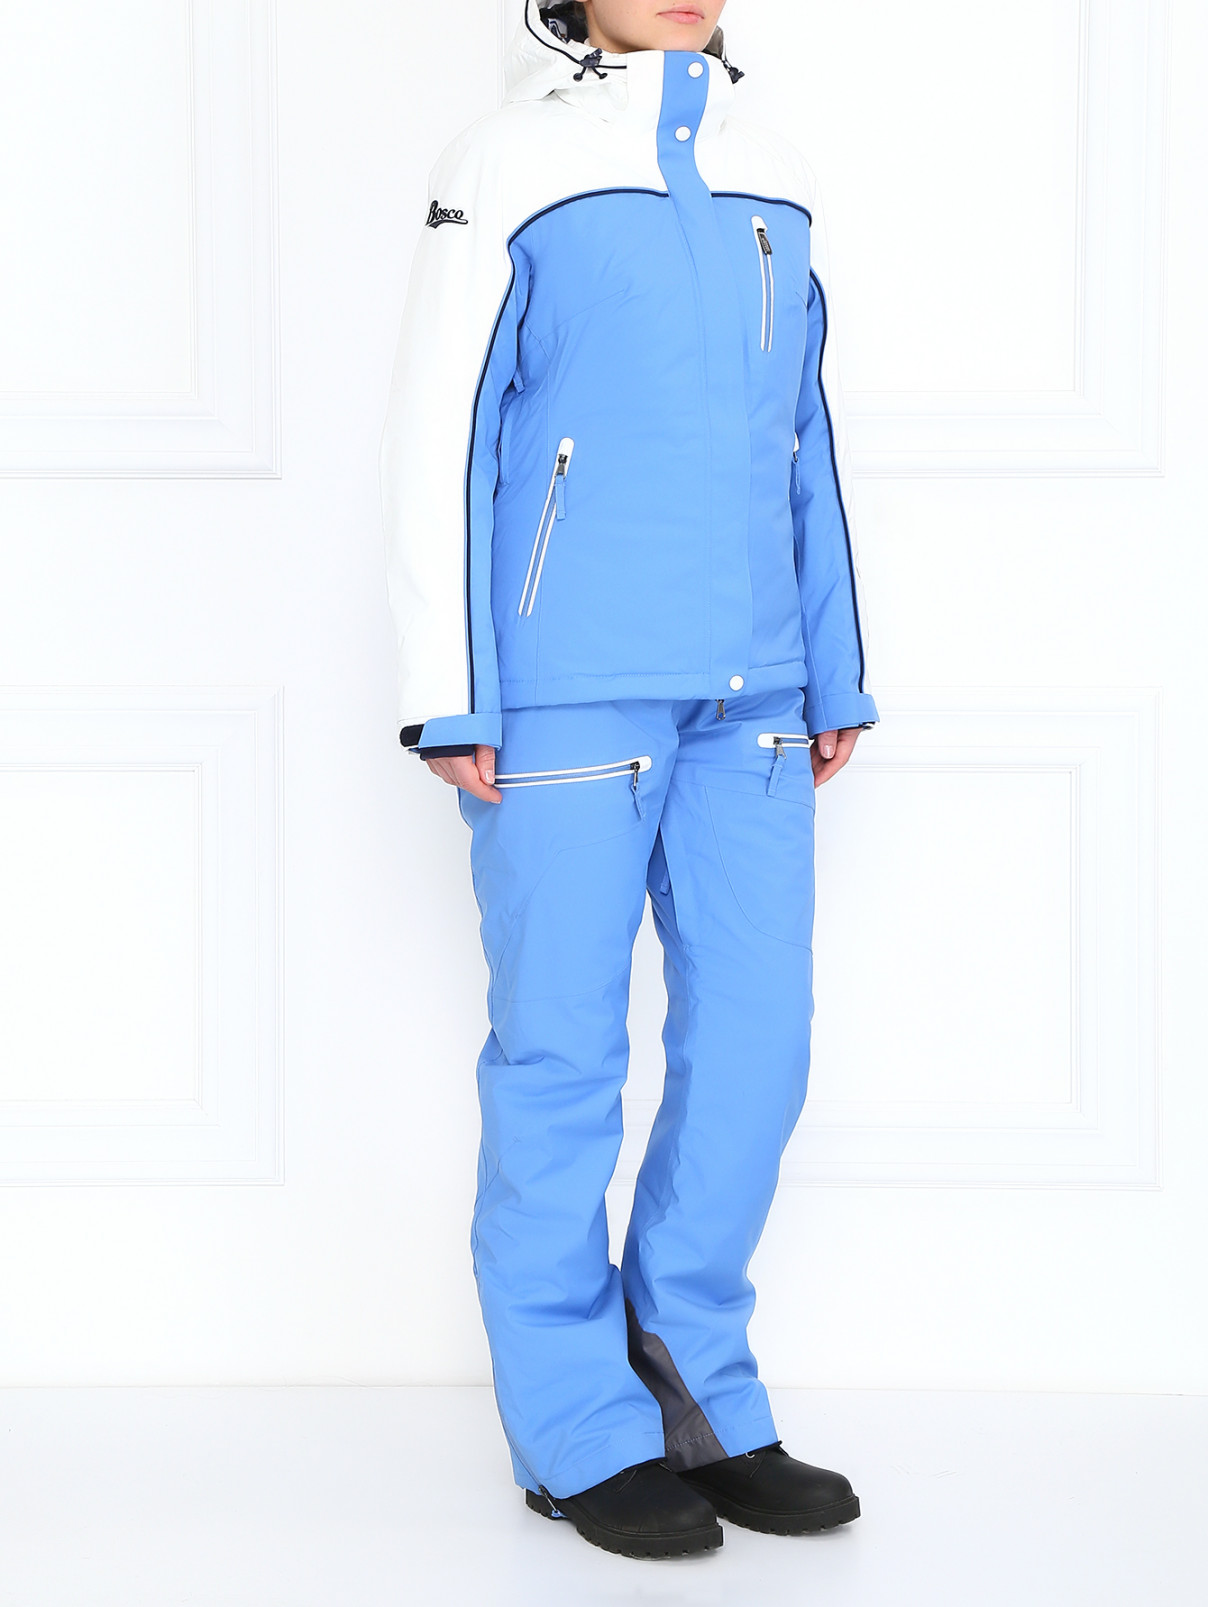 Горнолыжные брюки с боковыми карманами BOSCO  –  Модель Общий вид  – Цвет:  Синий